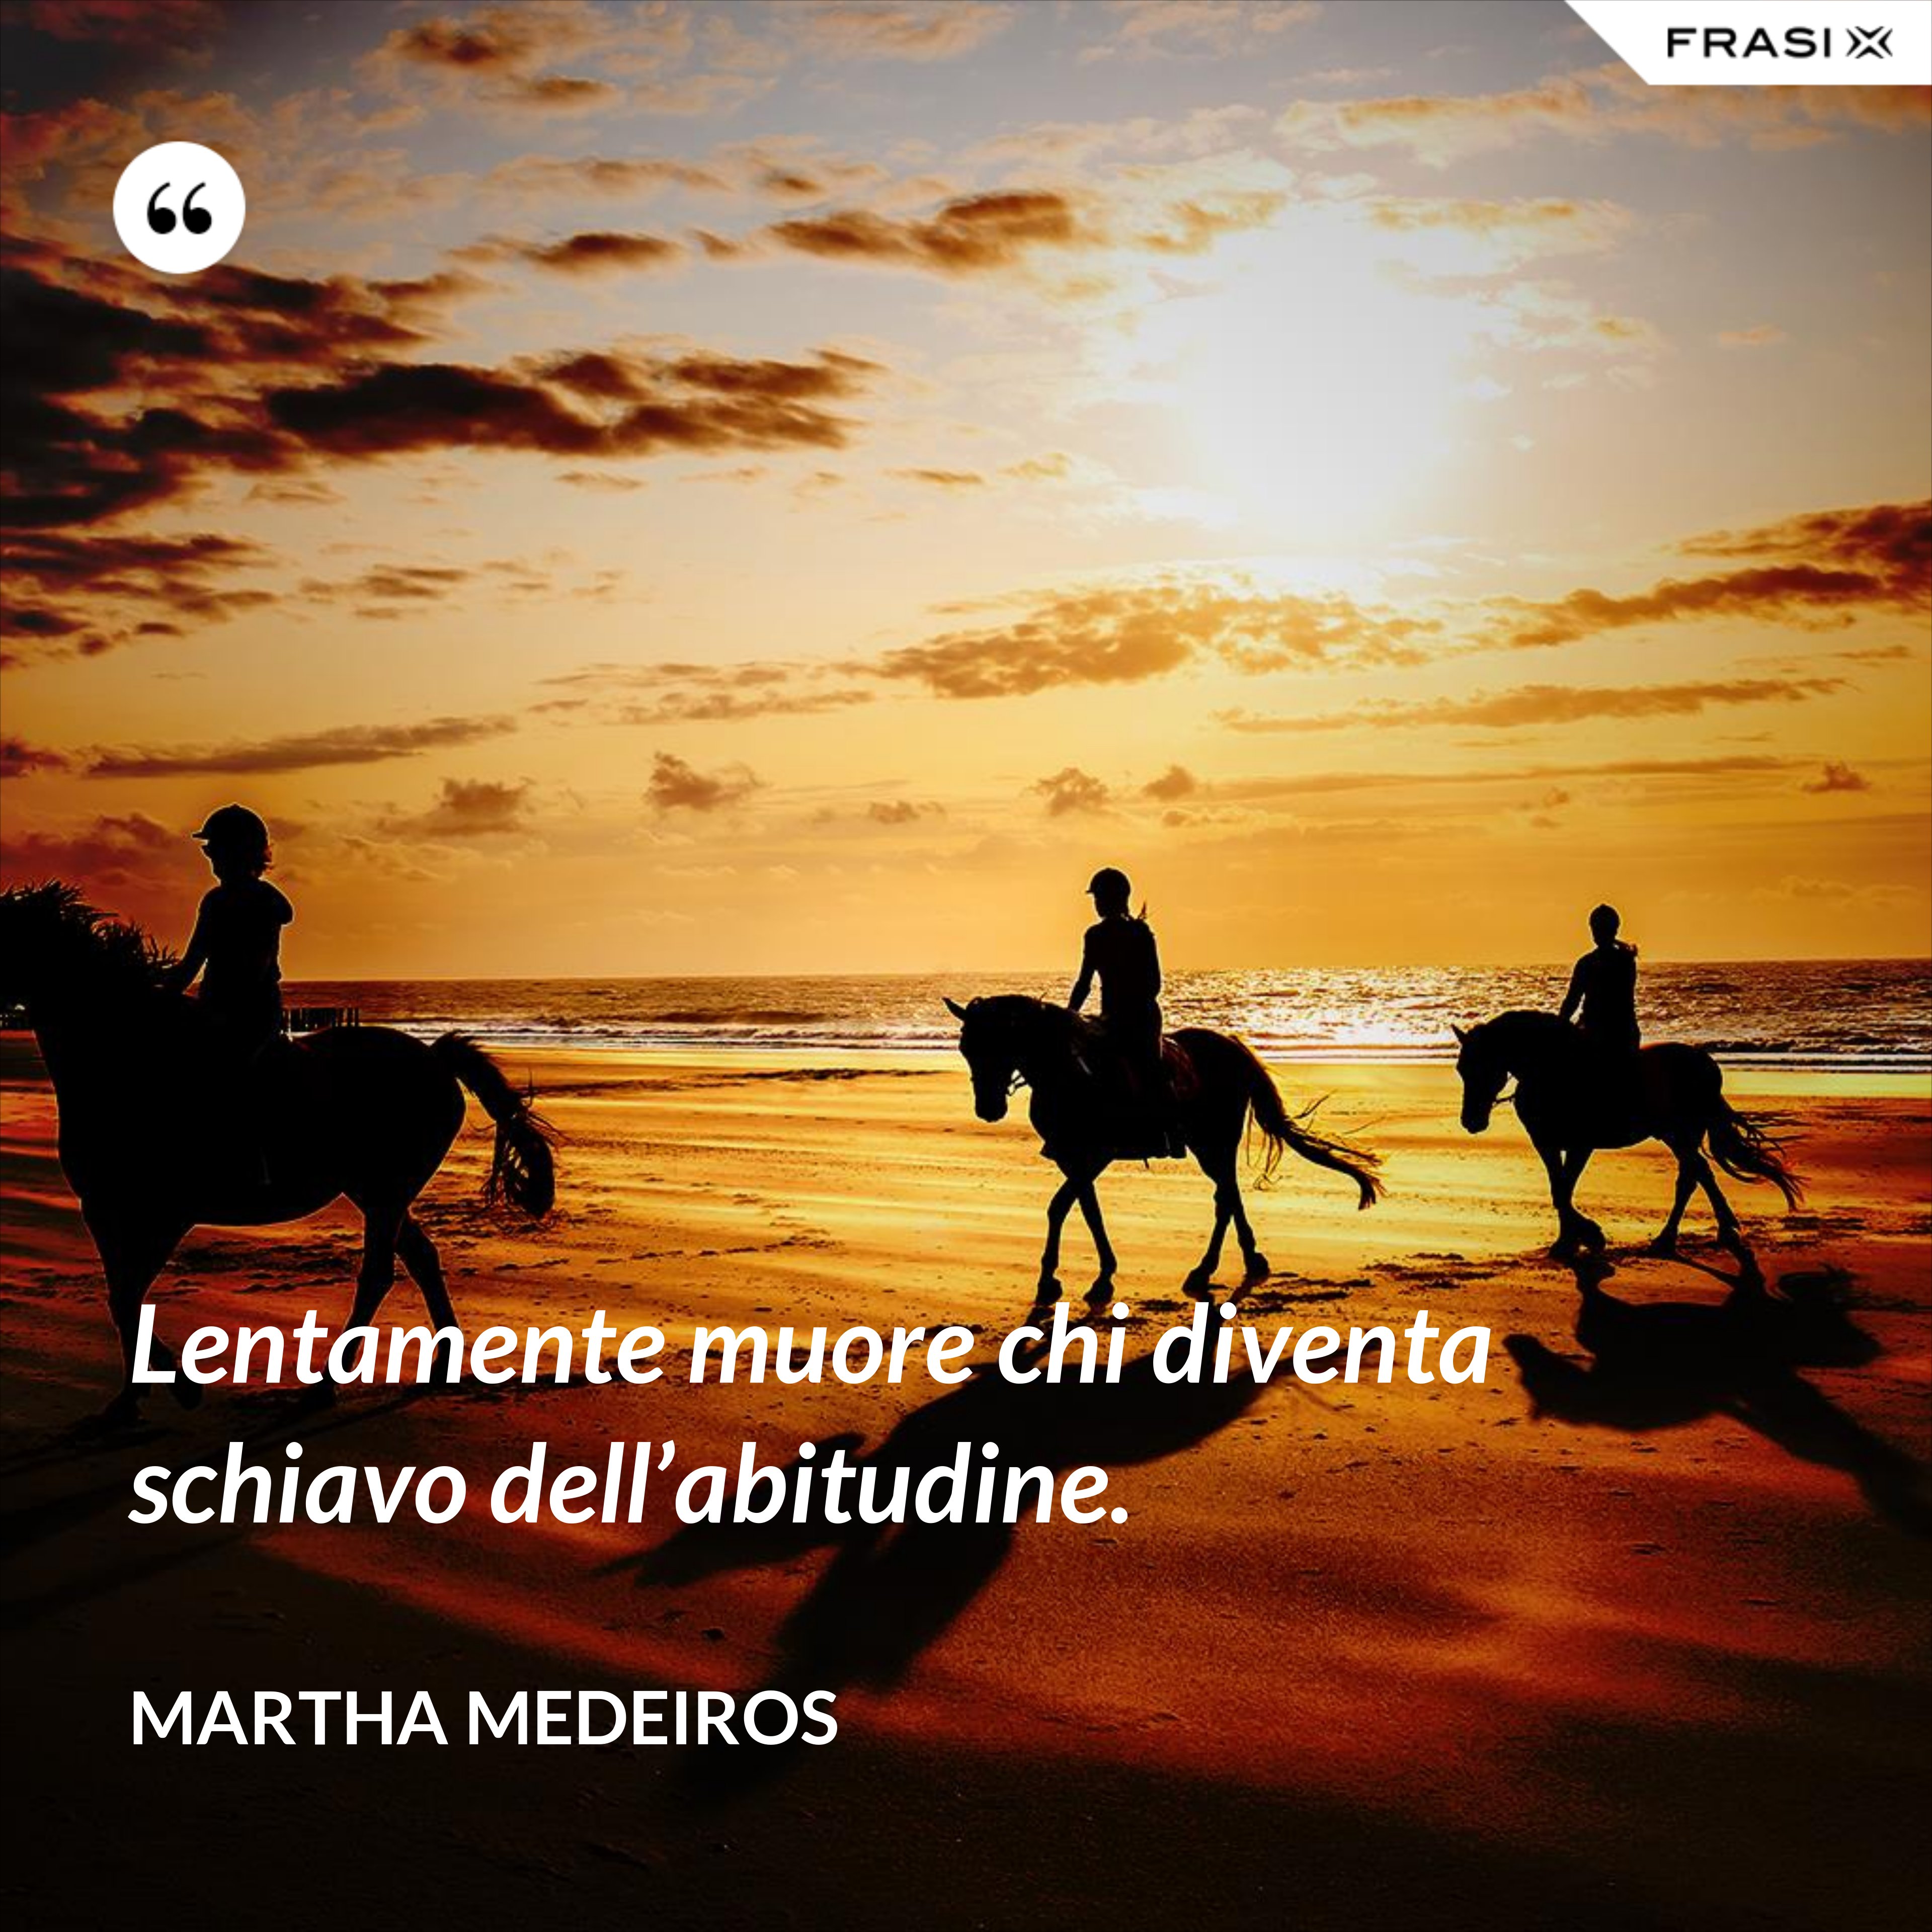 Lentamente muore chi diventa schiavo dell’abitudine. - Martha Medeiros